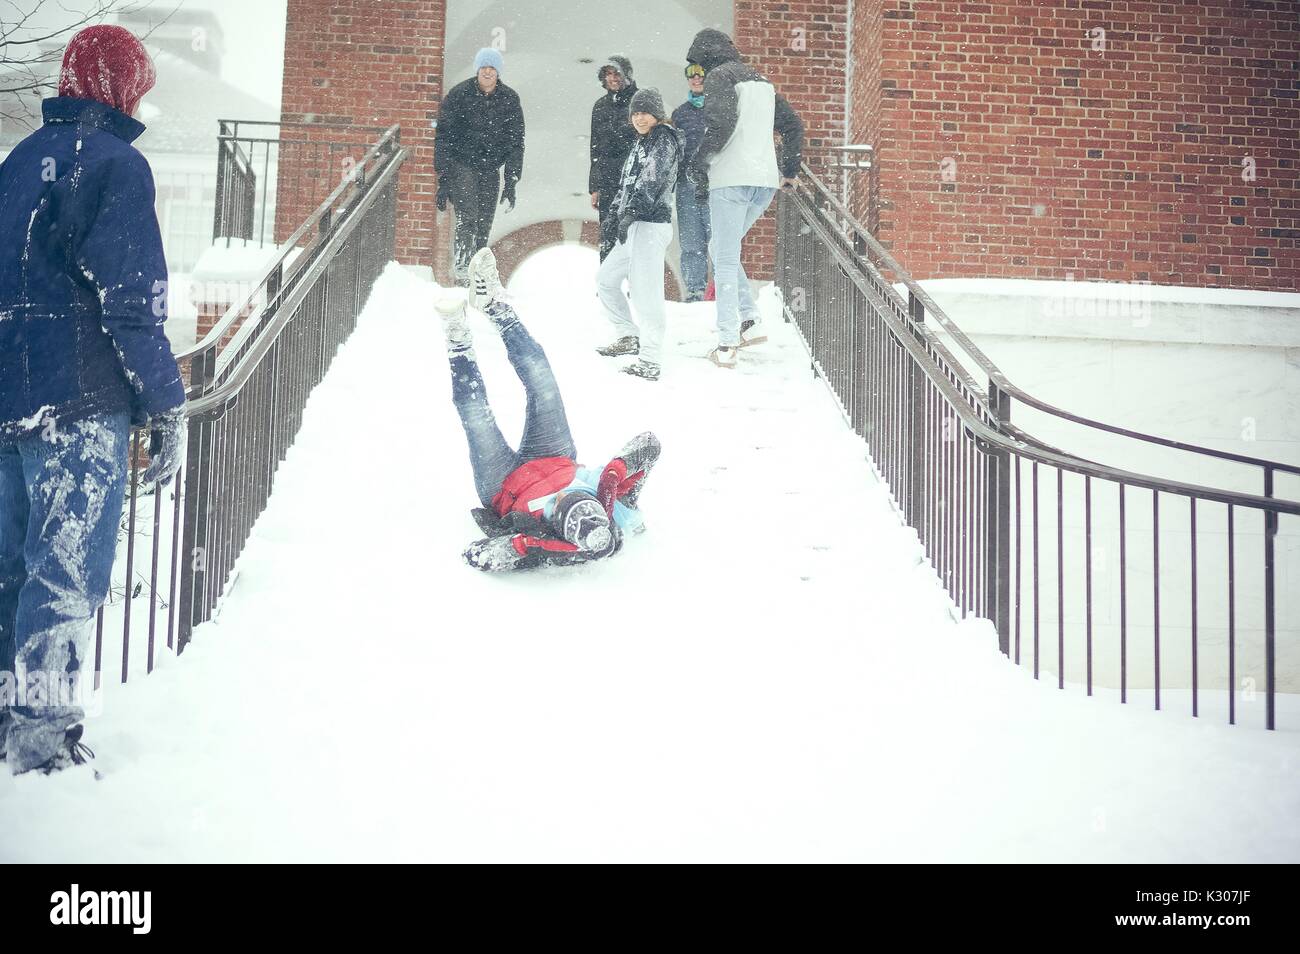 Ein Student rutscht durch die verschneite Treppe mit Beinen in der Luft und die Arme um den Kopf, während die Studenten im Schnee gang Lachen gekleidet und ihn von der Oberseite der Treppe jubeln, während einer Snow Day an der Johns Hopkins University, Baltimore, Maryland, 2016. Stockfoto